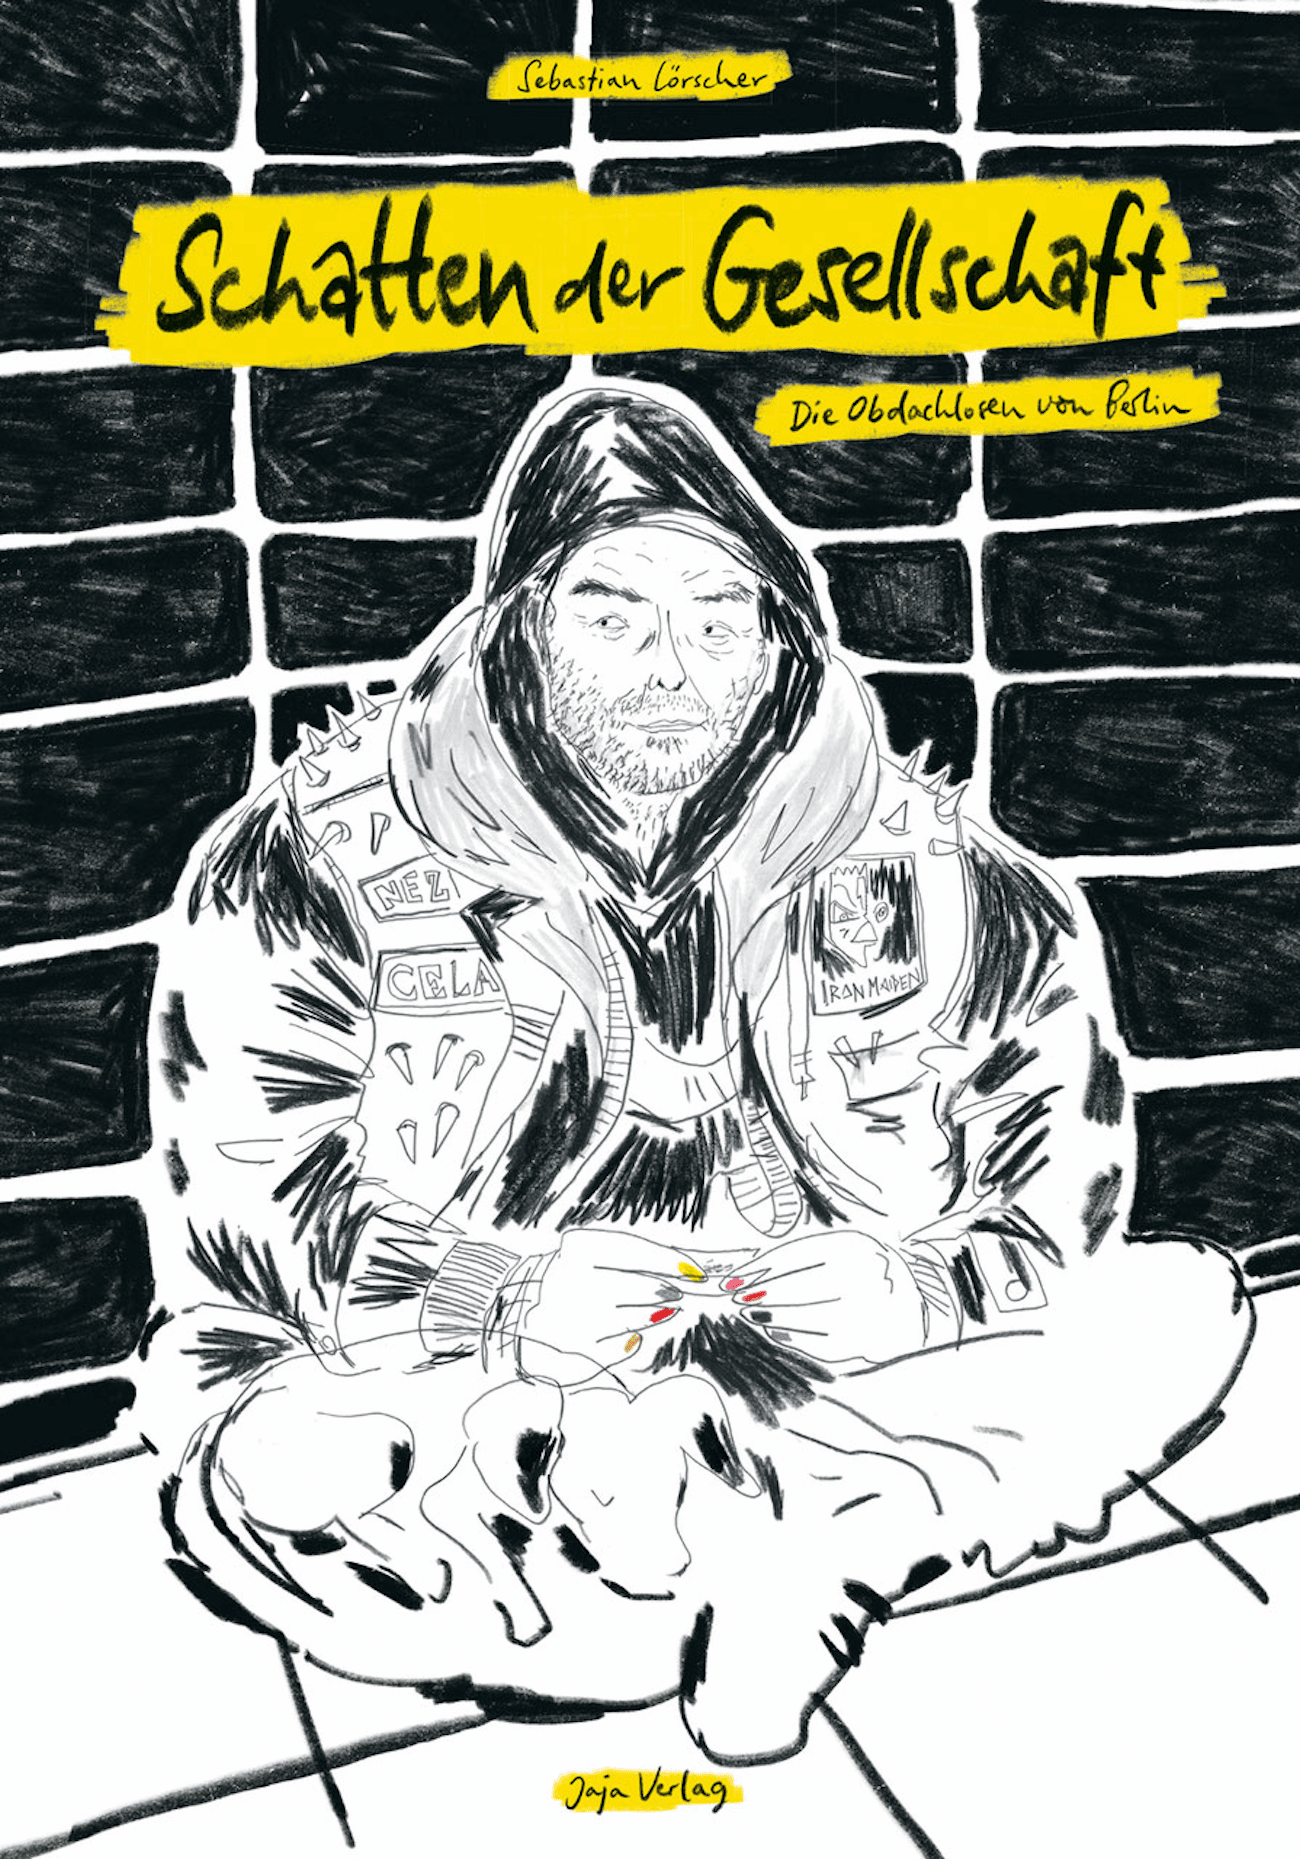 Coverillustration zu Schatten der Gesellschaft, eine Comicreportage von Sebastian Loerscher